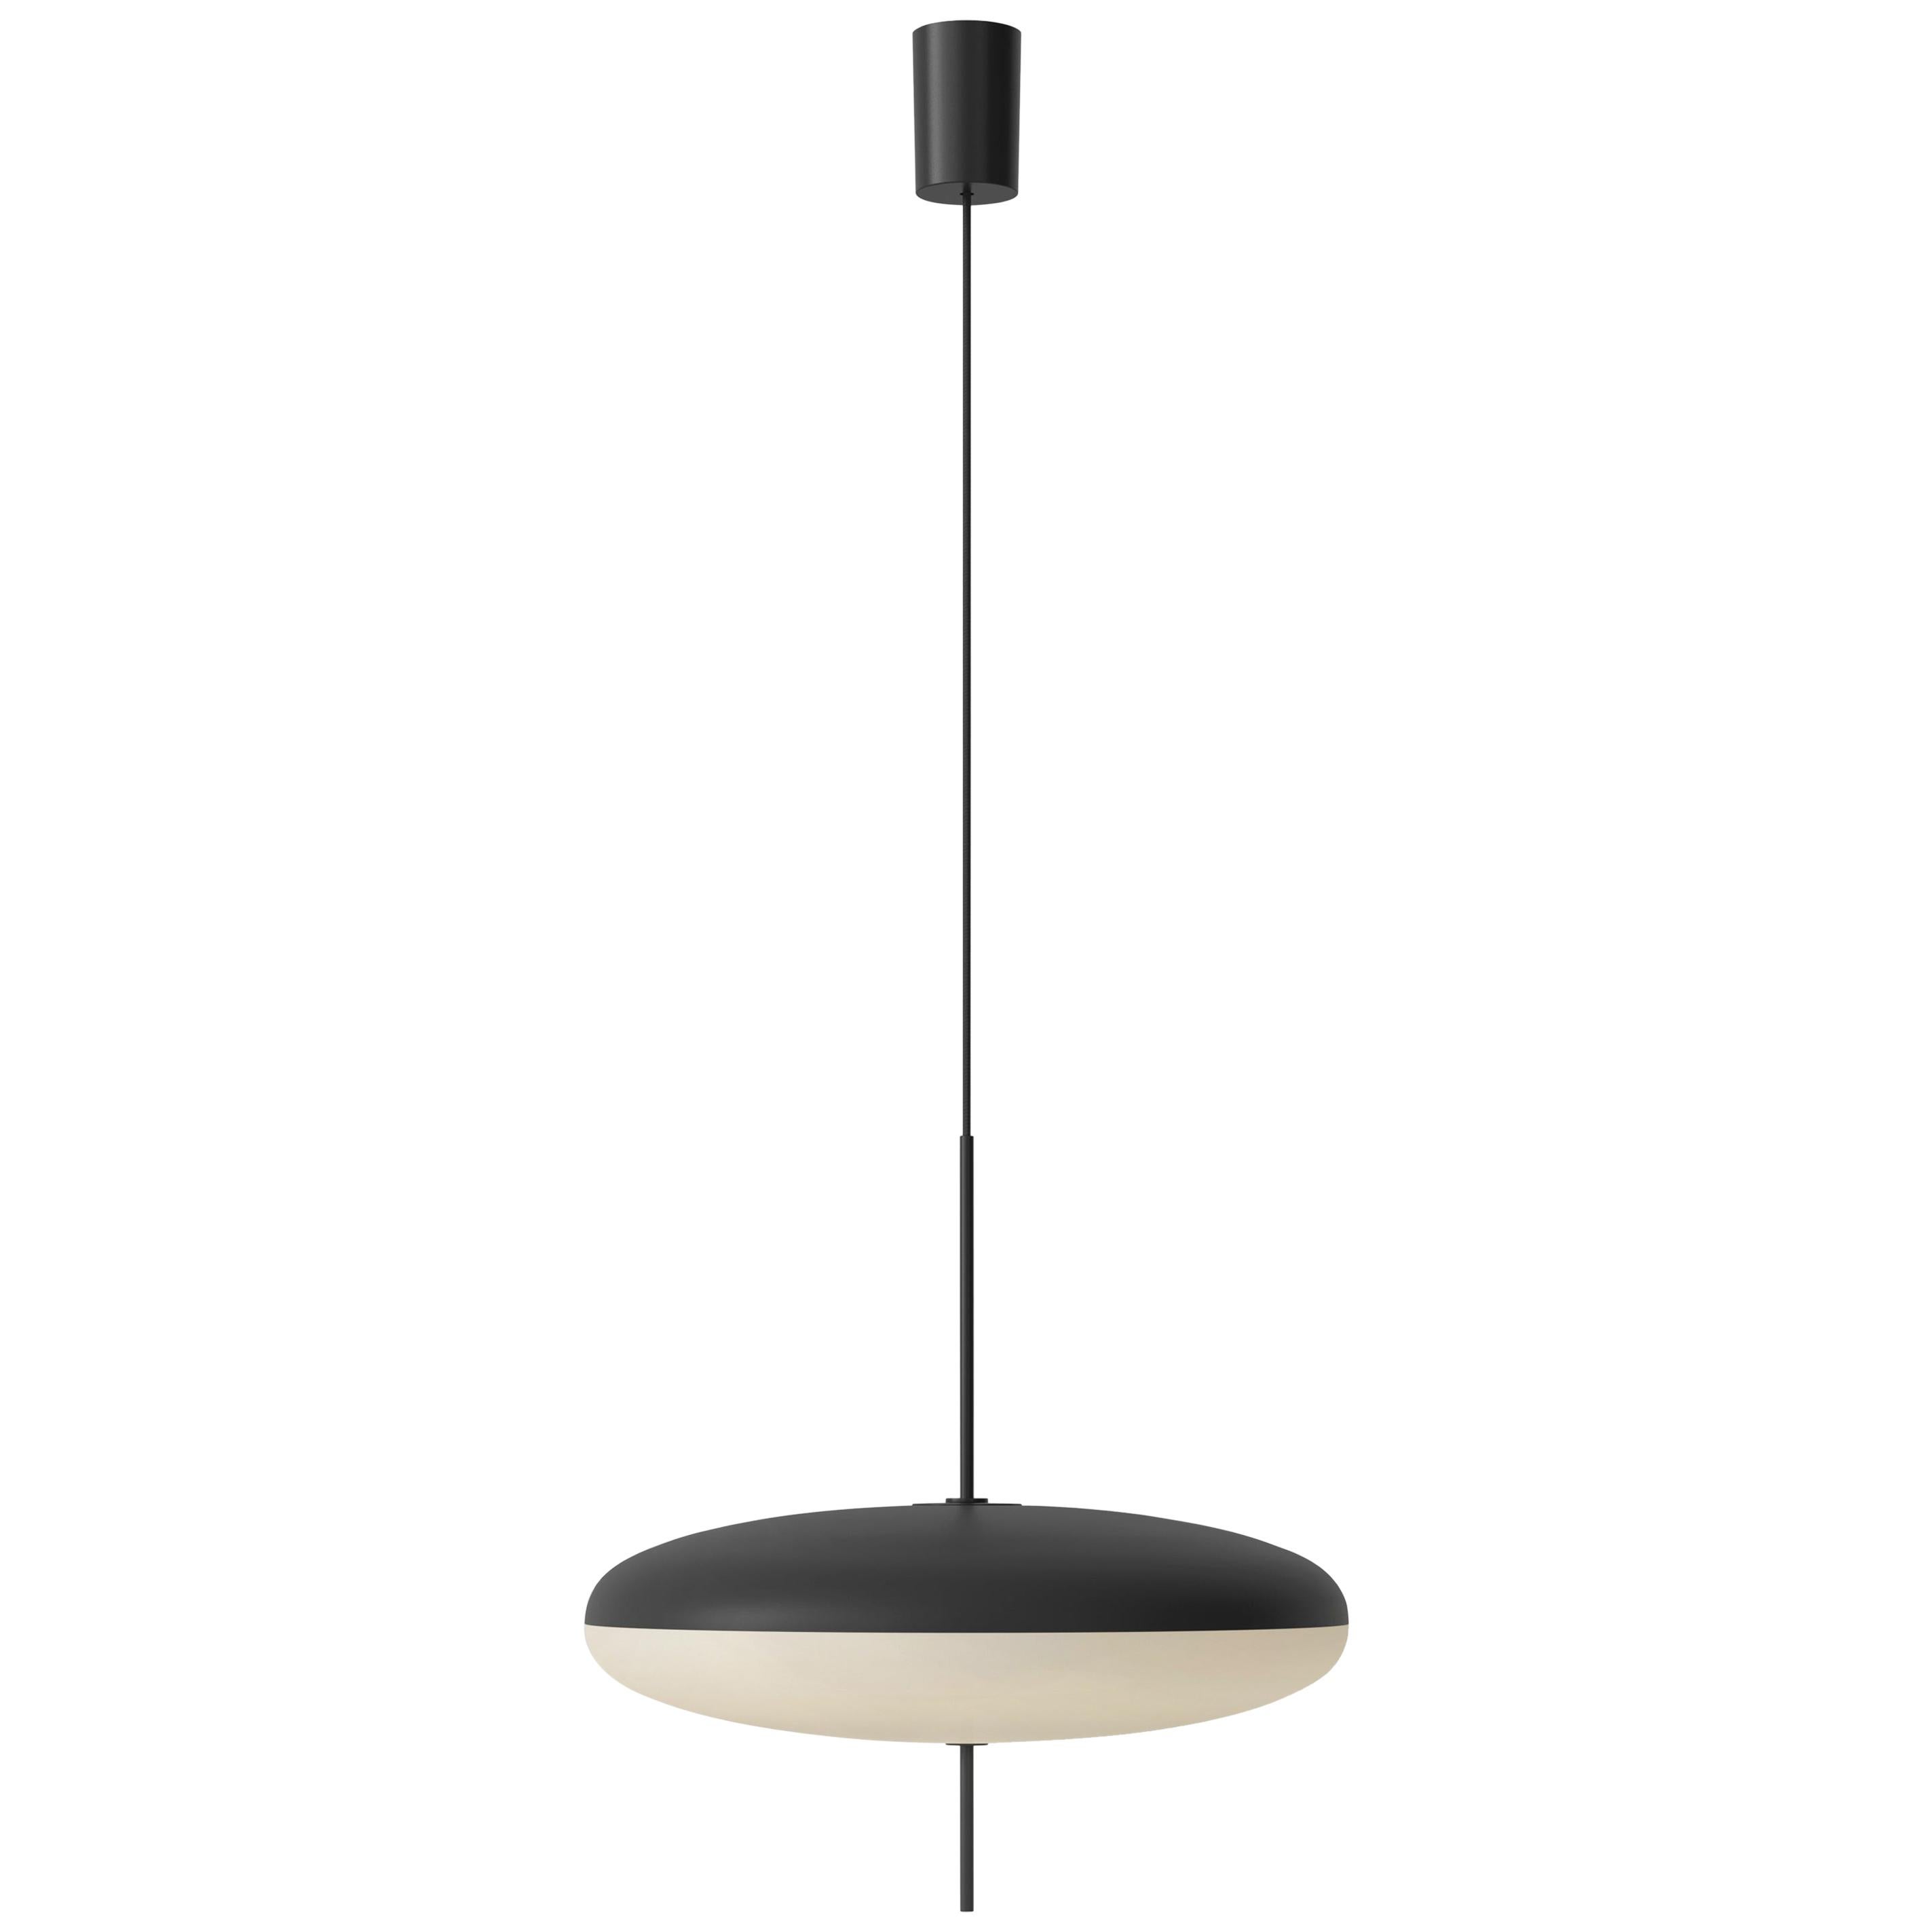 Gino Sarfatti Lamp Model 2065 Black White Diffuser, Black Hardware, Black Cable